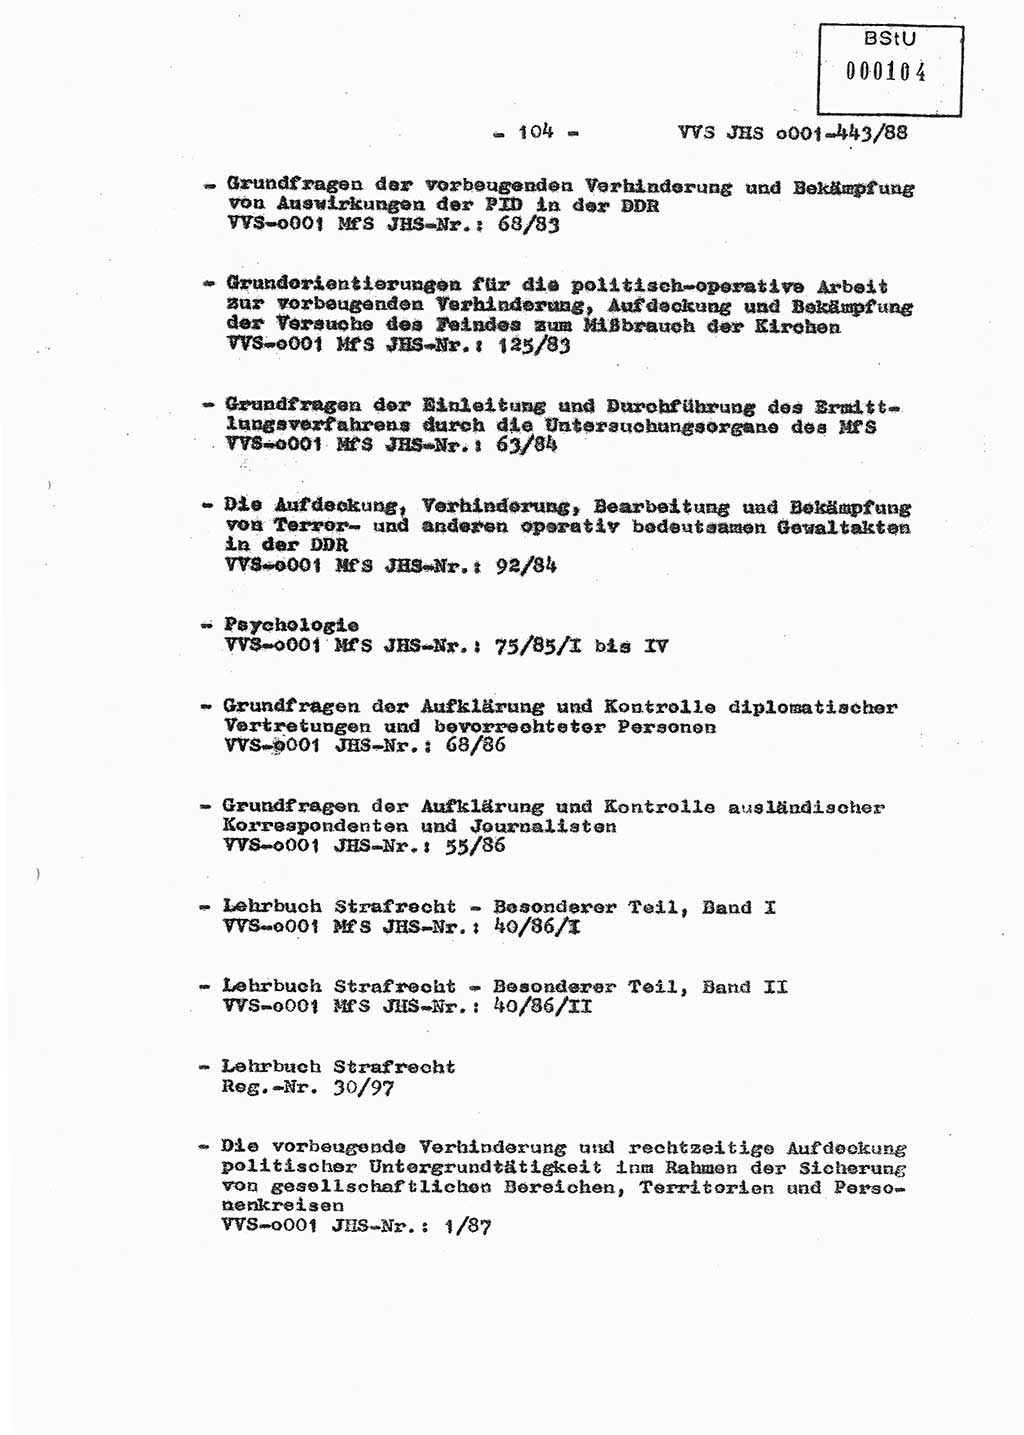 Diplomarbeit Hauptmann Michael Rast (Abt. ⅩⅣ), Major Bernd Rahaus (Abt. ⅩⅣ), Ministerium für Staatssicherheit (MfS) [Deutsche Demokratische Republik (DDR)], Juristische Hochschule (JHS), Vertrauliche Verschlußsache (VVS) o001-443/88, Potsdam 1988, Seite 104 (Dipl.-Arb. MfS DDR JHS VVS o001-443/88 1988, S. 104)